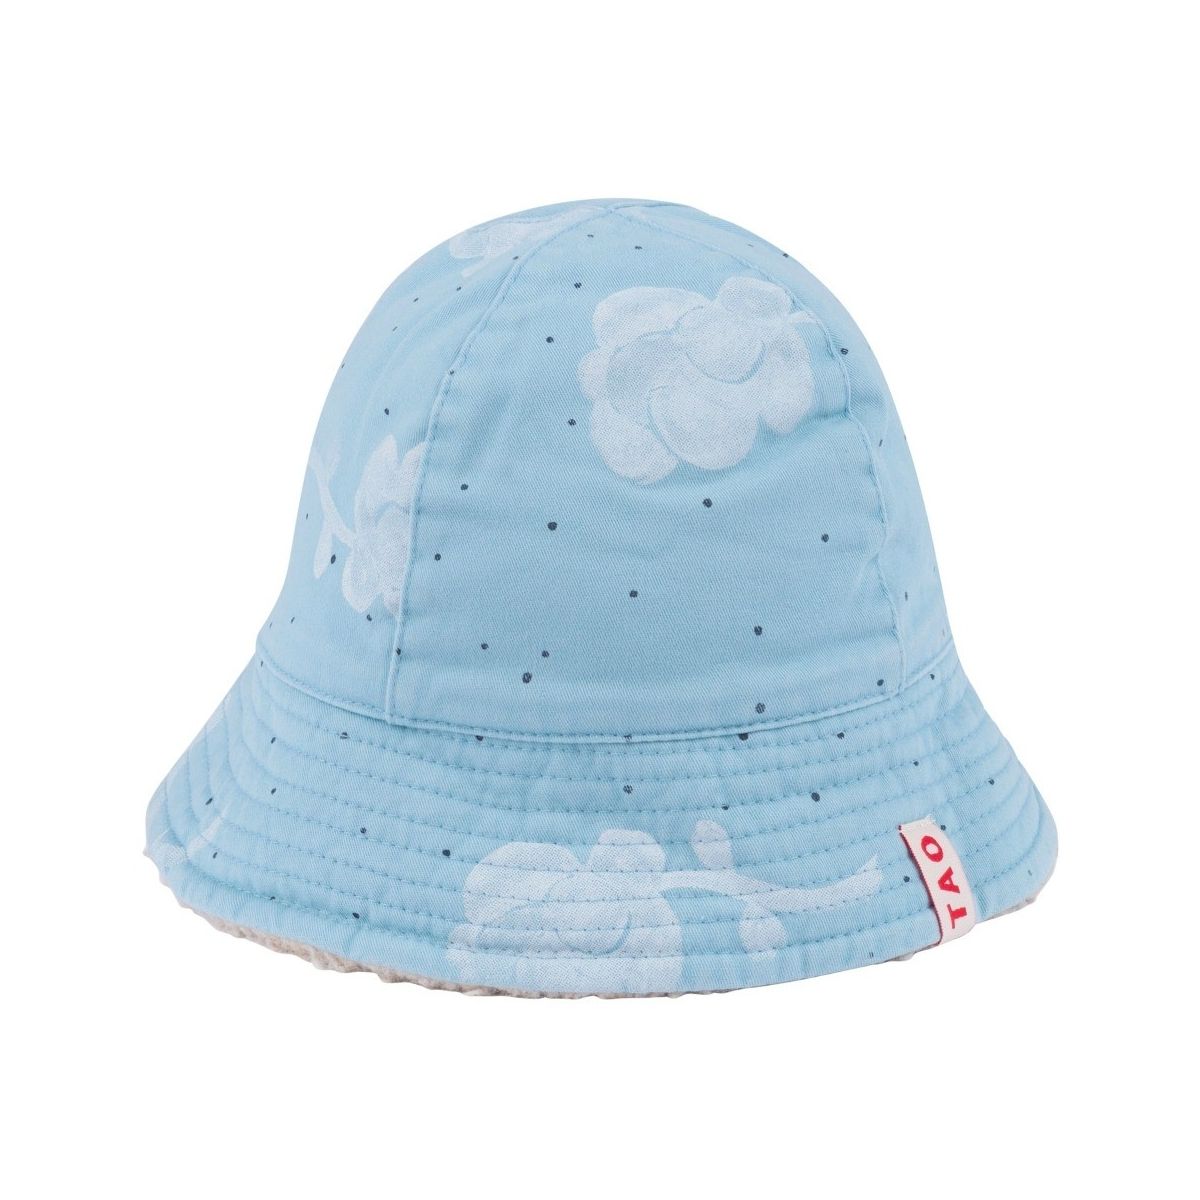 The Animals Observatory - Sombrero de bebé estrella de mar con flores azules - Gorras y gorros - 000823_143_IS 